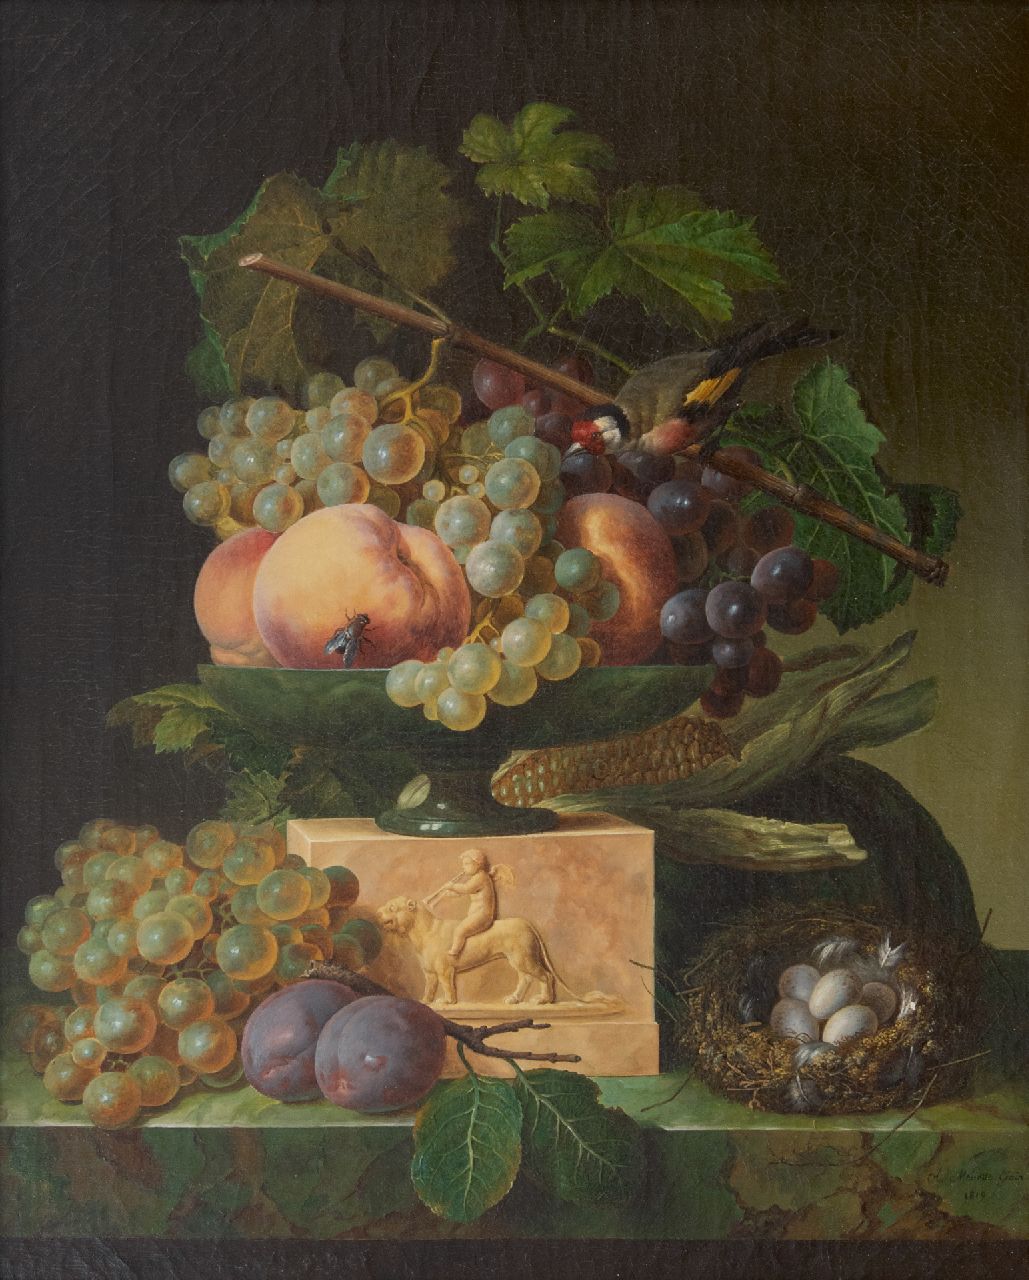 Génin O.M.  | Olympe Mouette Génin | Schilderijen te koop aangeboden | Stilleven met druiven, een vogelnestje en een puttertje, olieverf op doek 49,2 x 39,8 cm, gesigneerd rechtsonder en gedateerd 1819